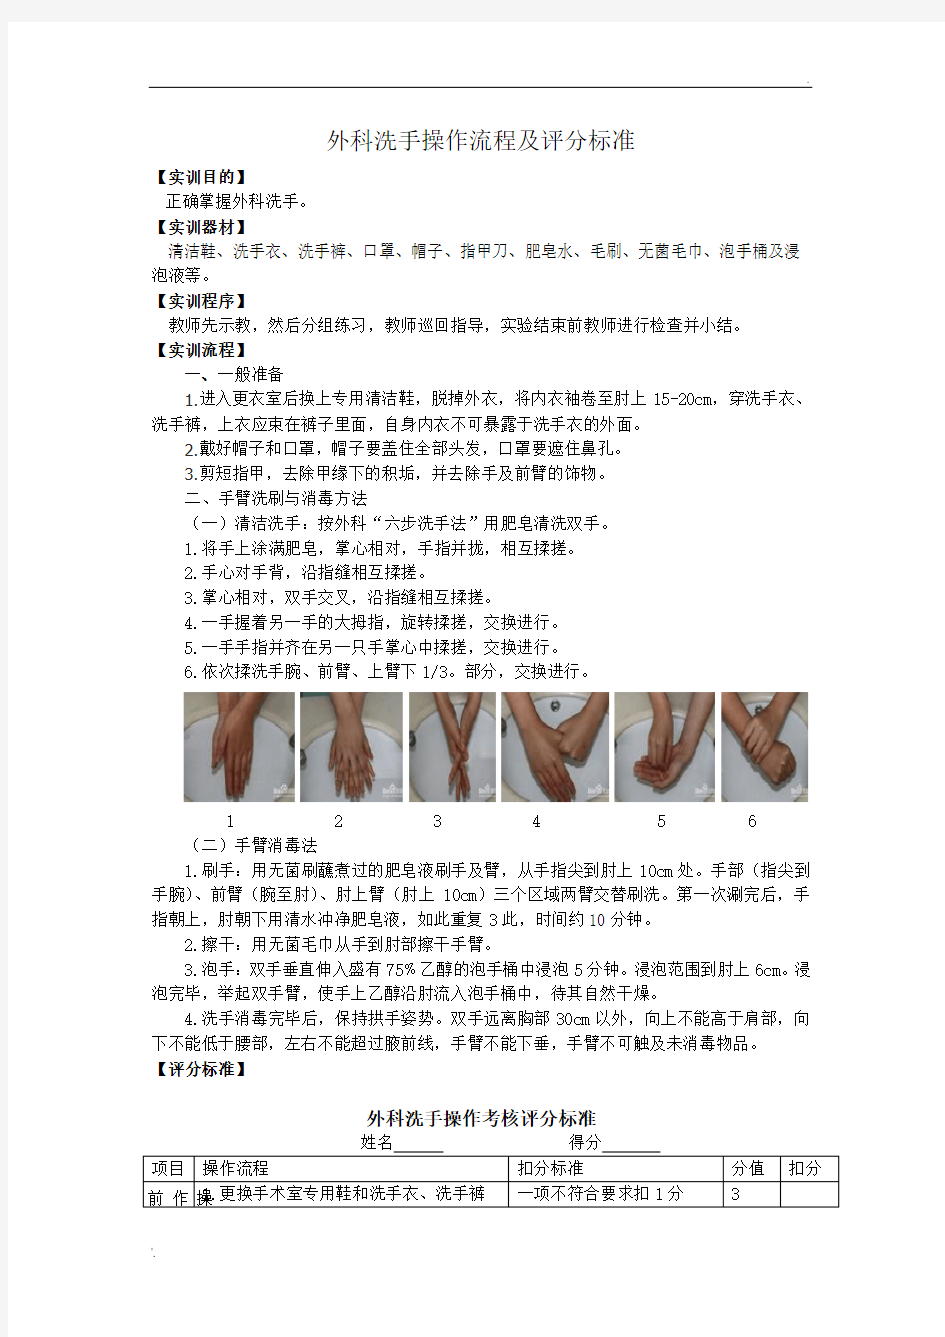 外科洗手操作流程及评分标准